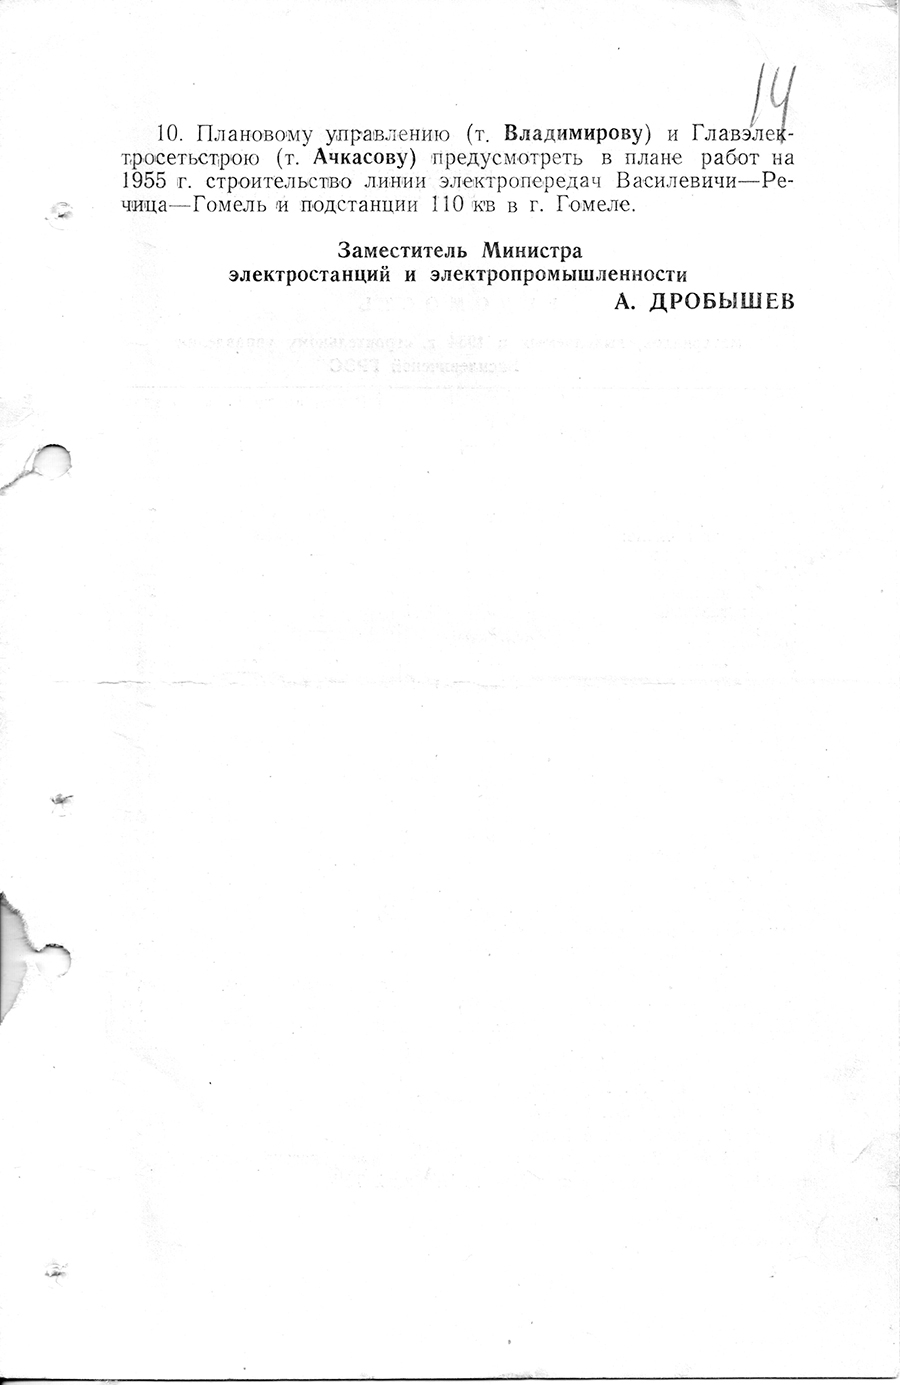 Befehl Nr. 206/a des Ministeriums für Kraftwerke und Elektroindustrie der UdSSR zur Forcierung des Baus des Wassilevich-Kraftwerks-стр. 2